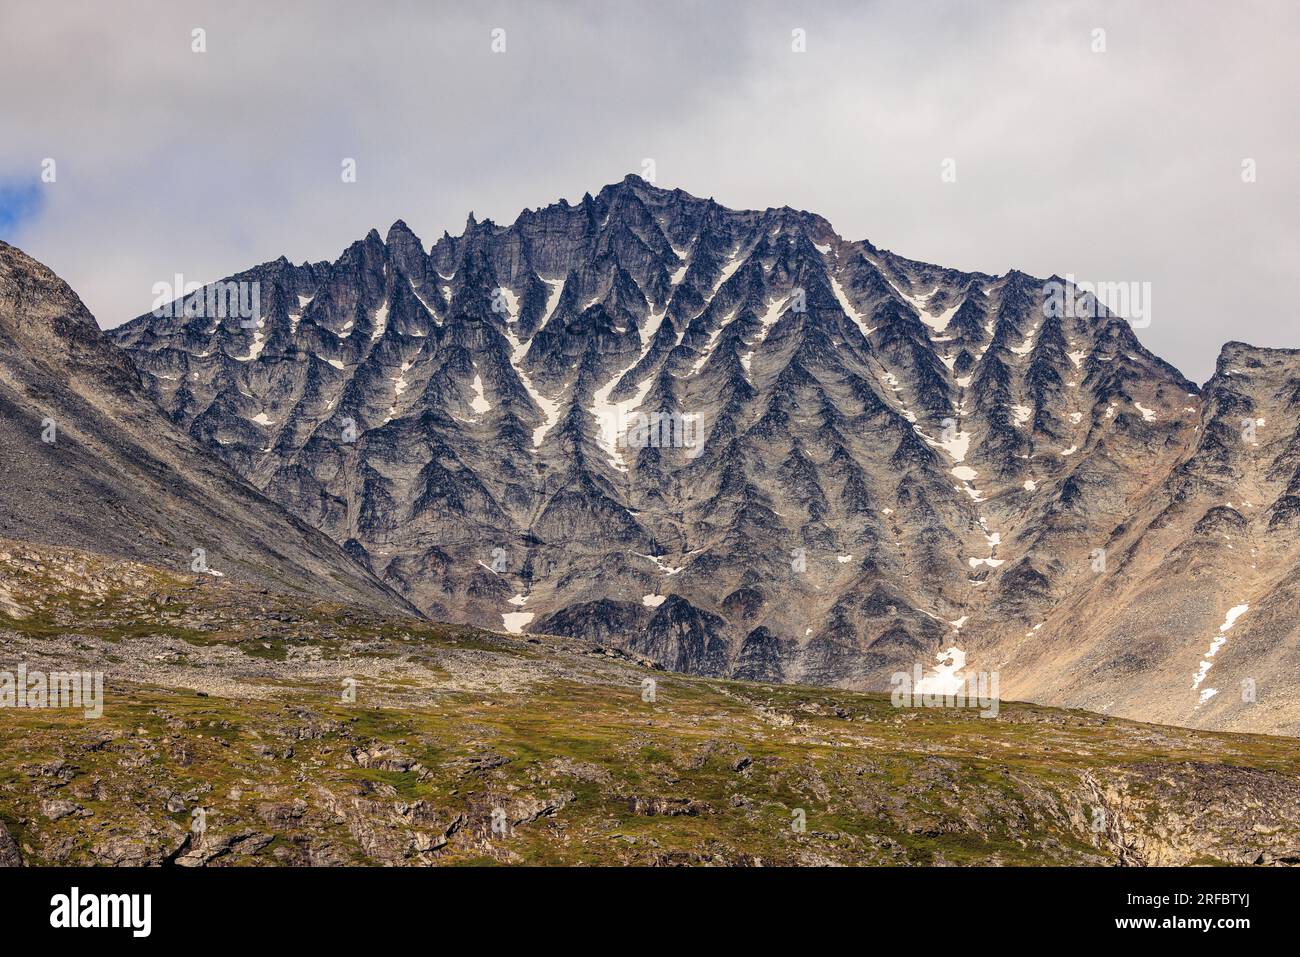 le numerose cime spinose sul fianco di questa montagna rocciosa nel fiordo di tasermiut in groenlandia le conferiscono un aspetto da riccio spinoso Foto Stock